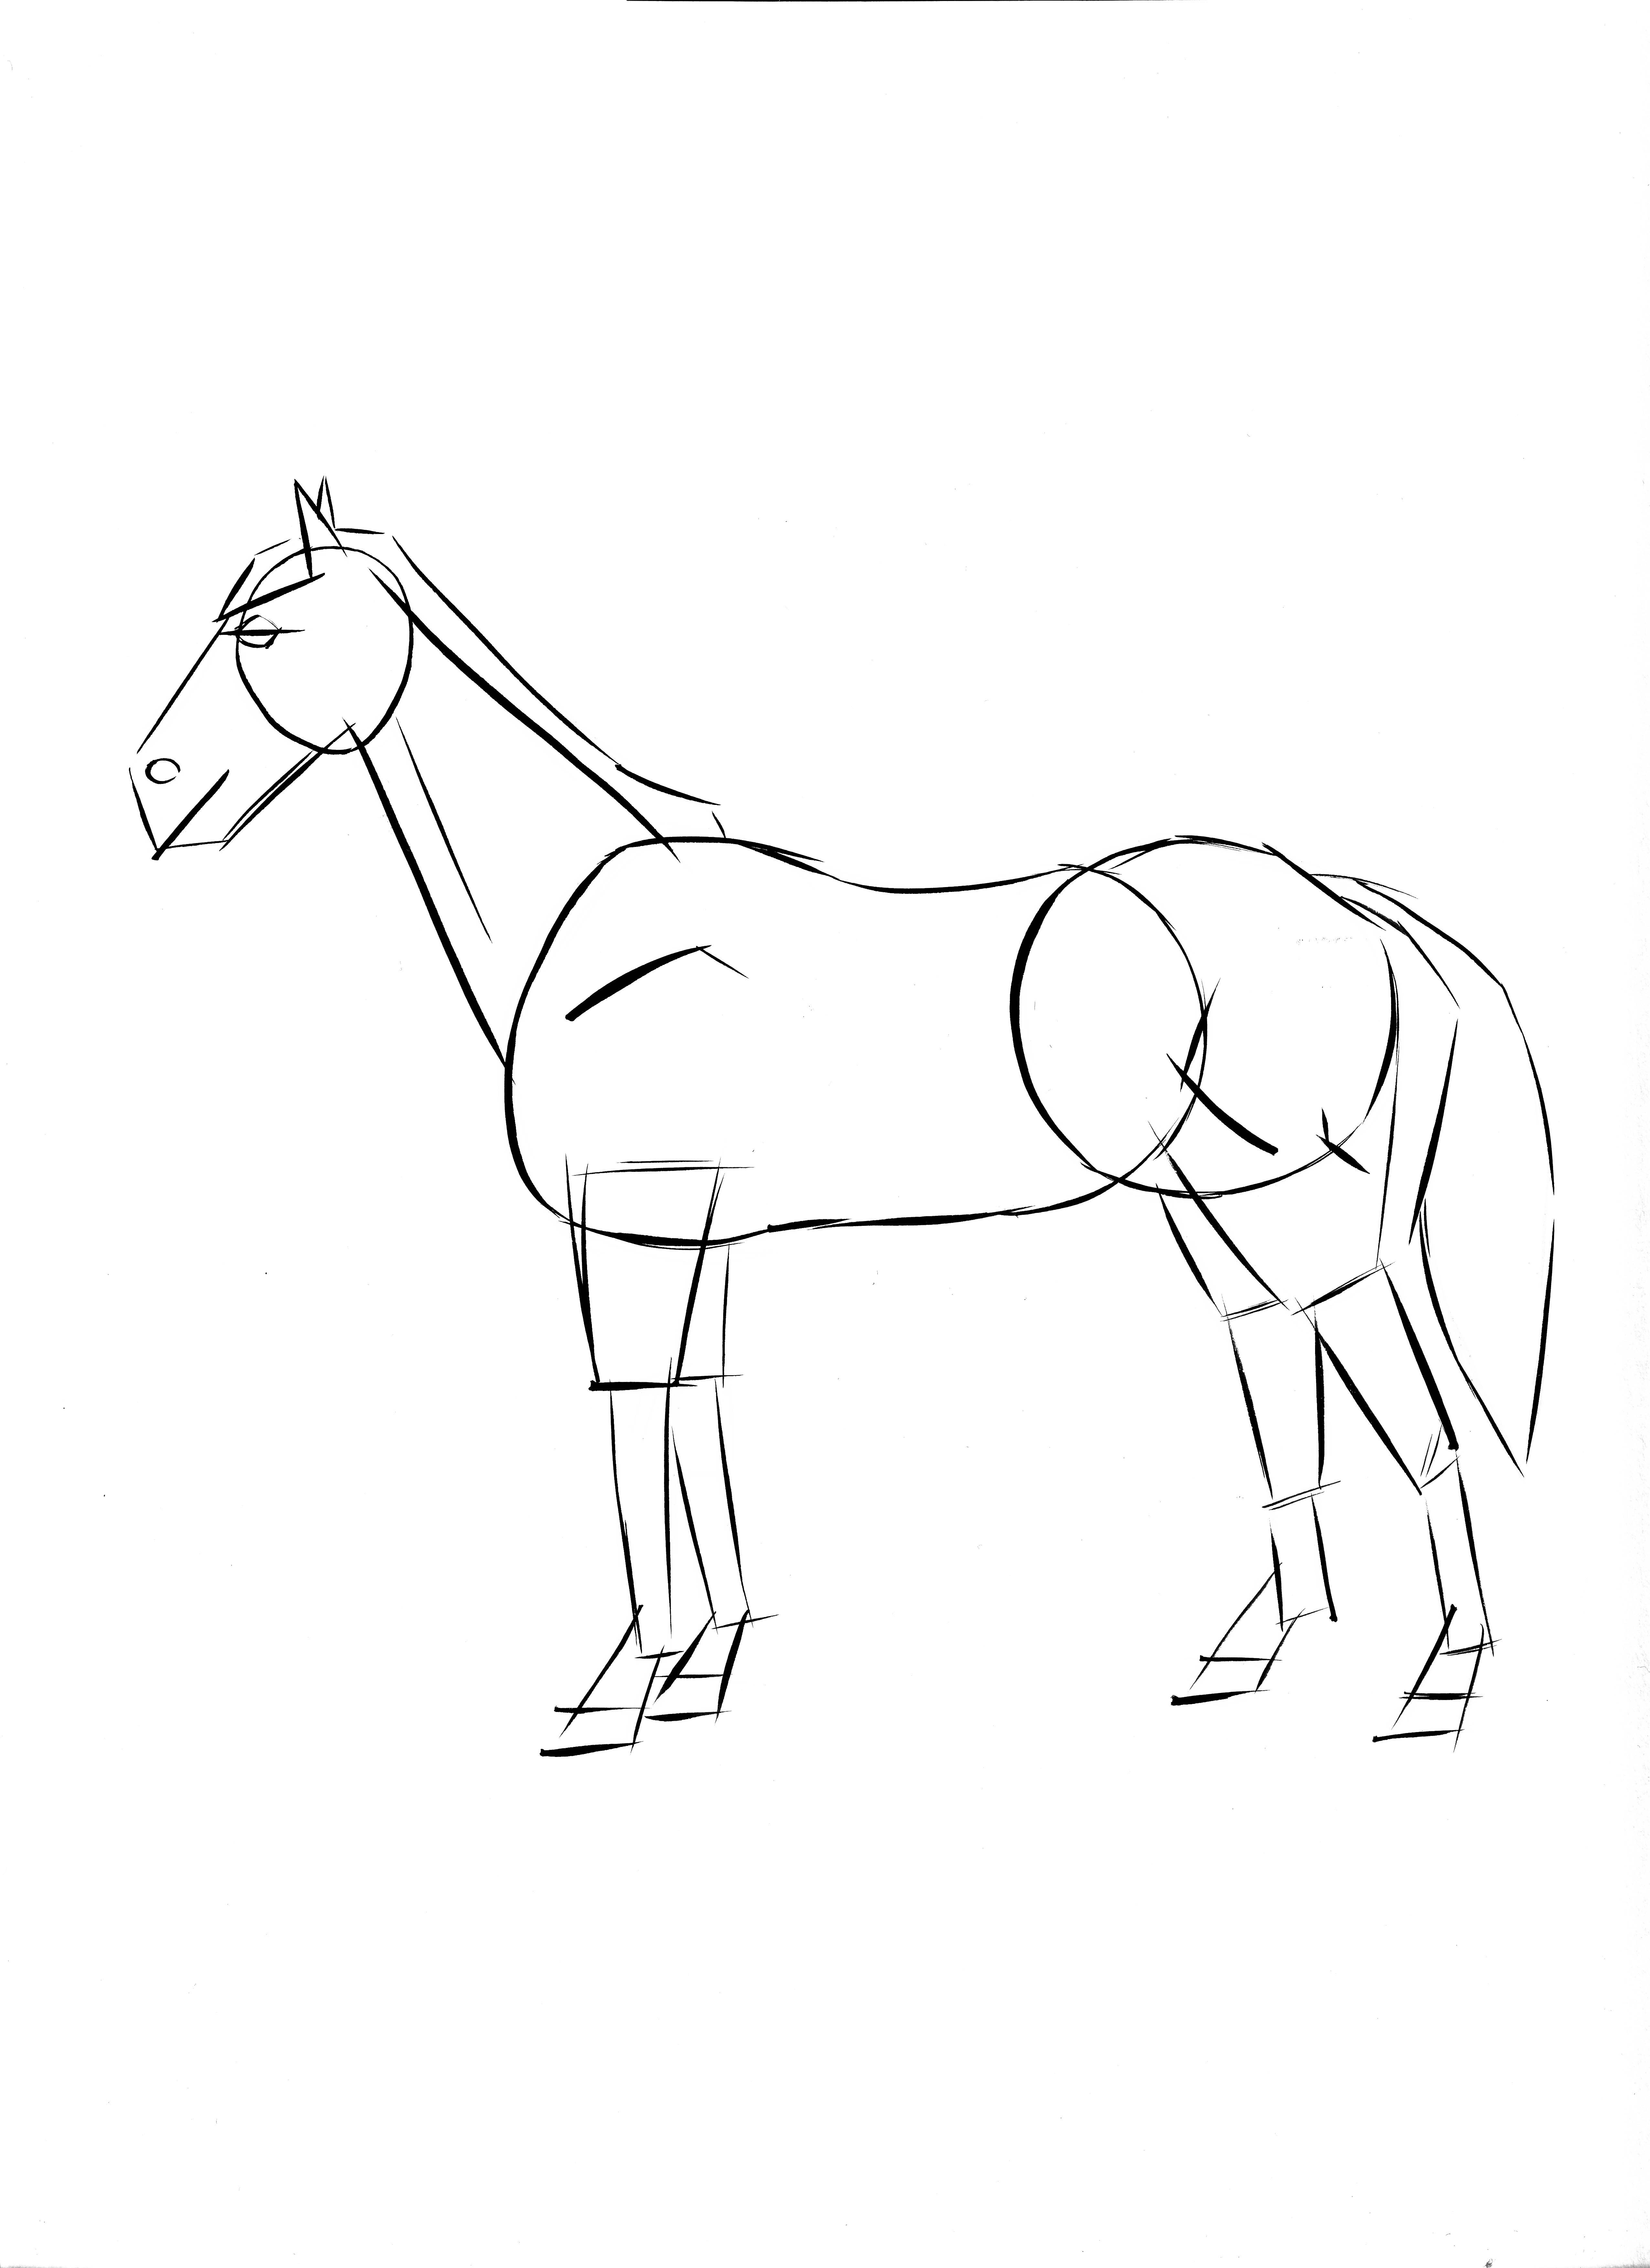 Actividades infantiles: dibujar un caballo | Canson